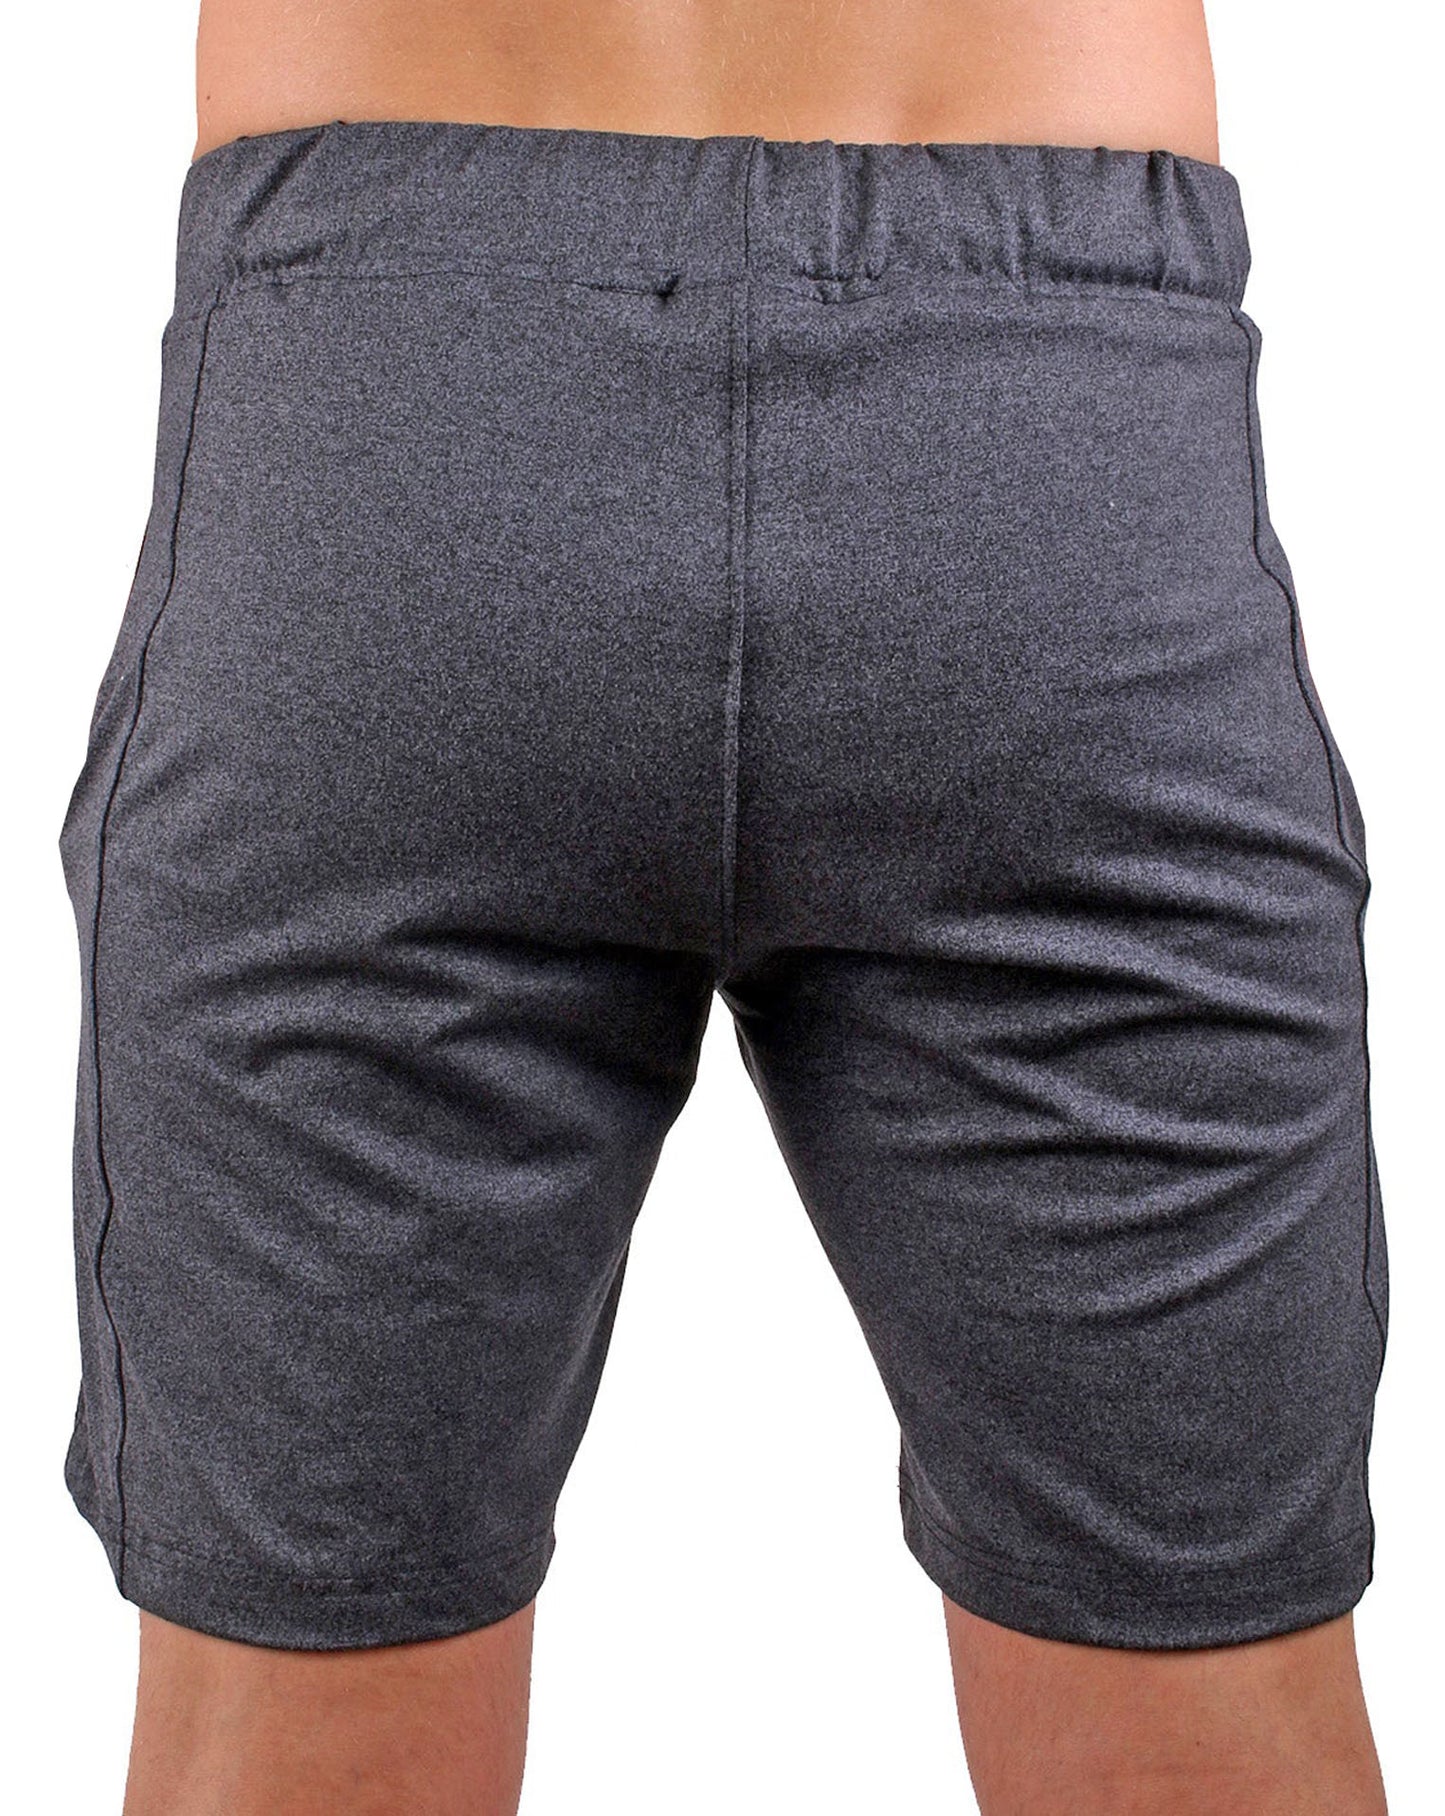 Hochwertige dunkelgraue Herren Sport Shorts mit verstellbarem Kordelzug und praktischen Taschen, perfekt für Training und Freizeit.